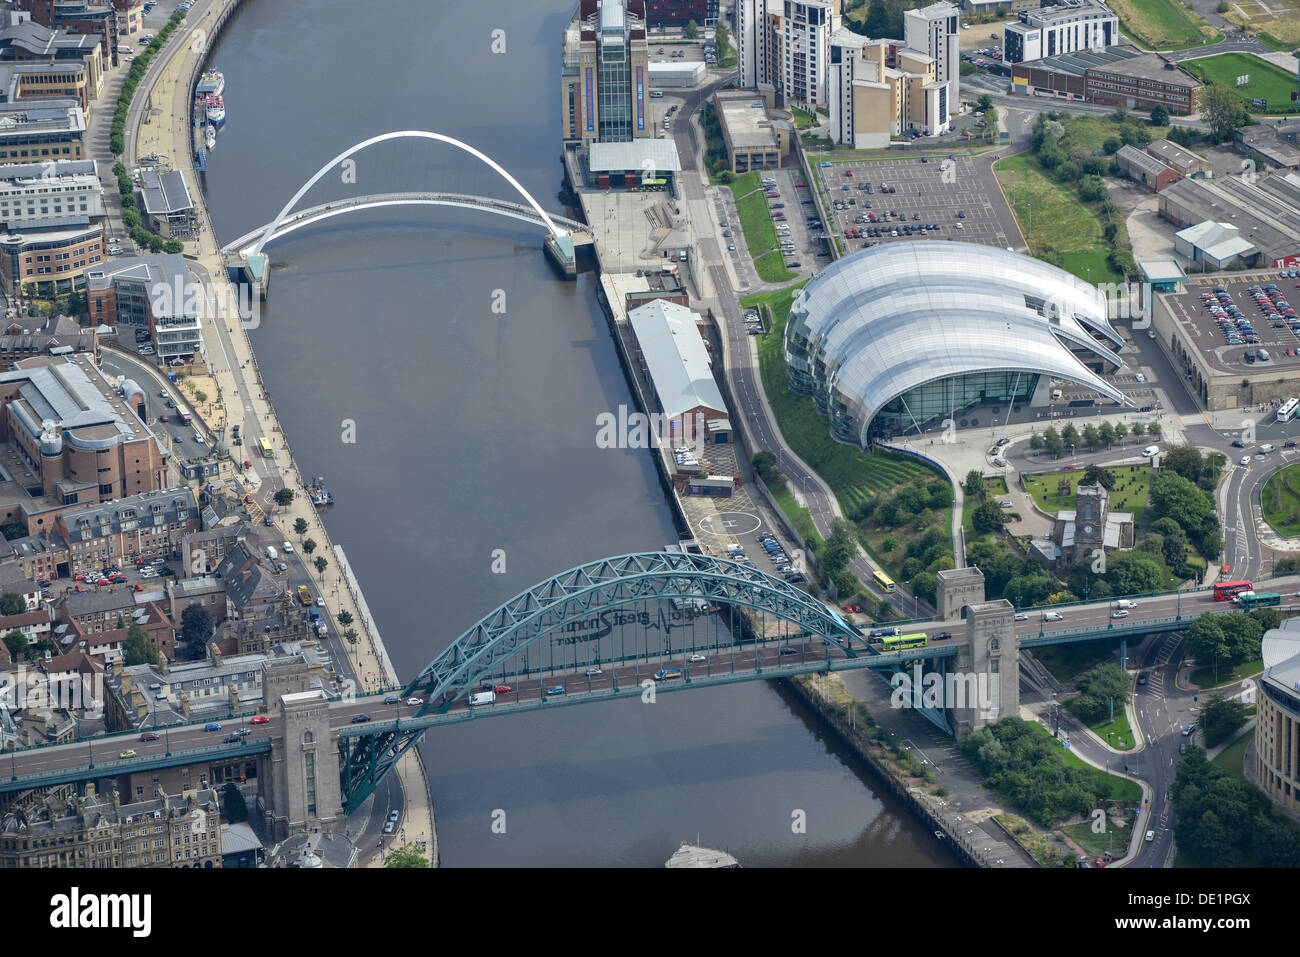 Fotografía aérea de los puentes Tyne y el Sage Gateshead Foto de stock